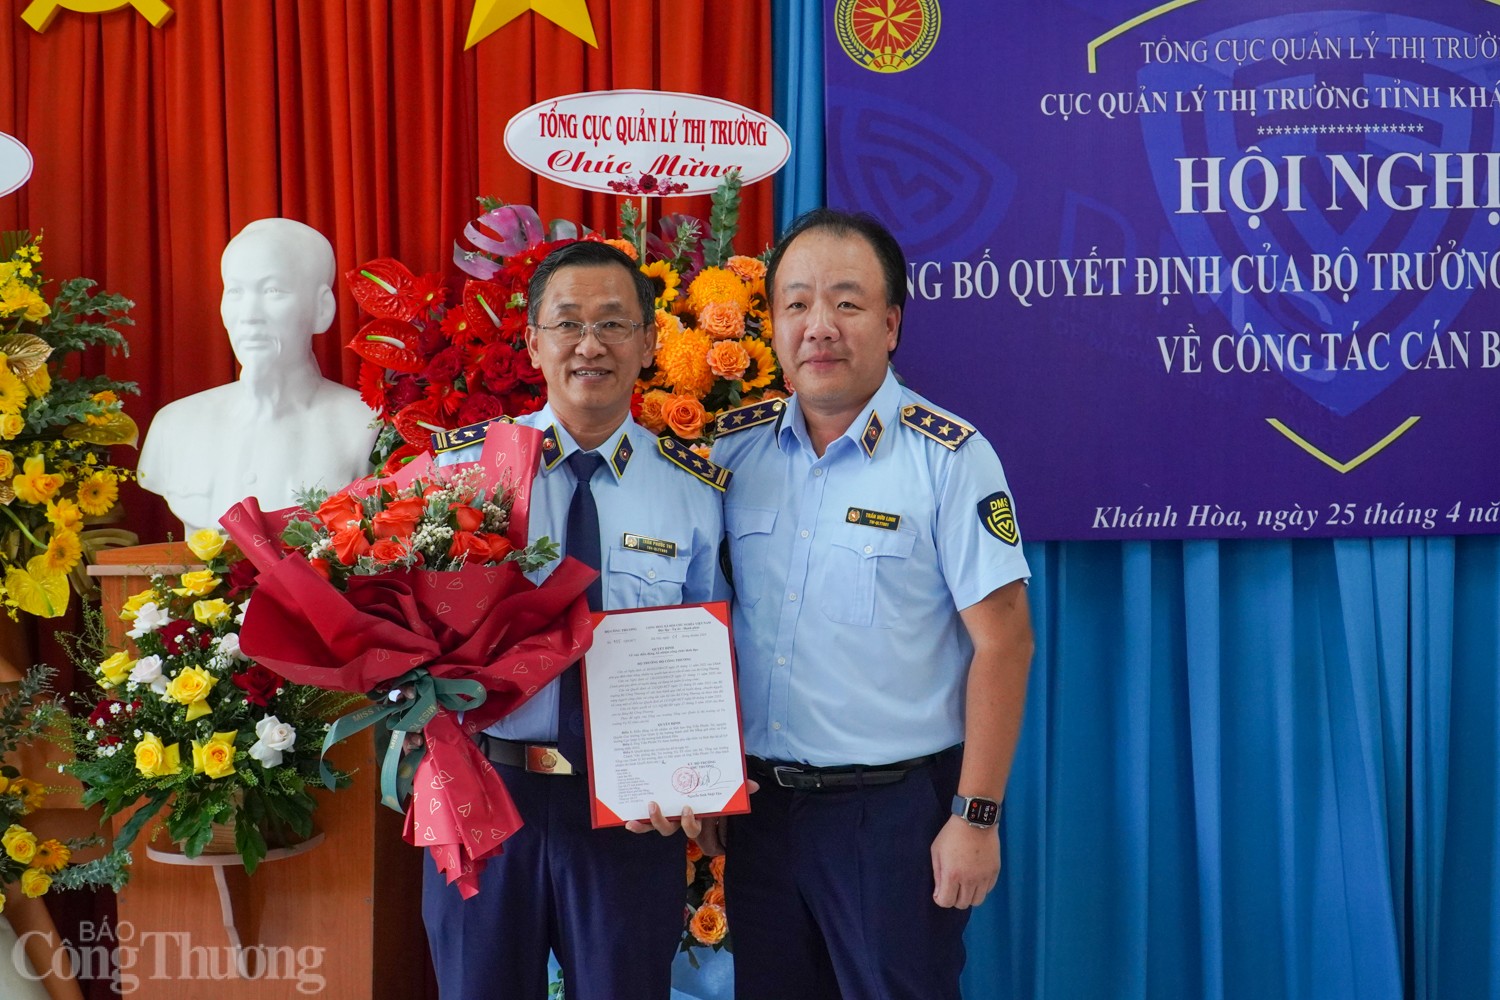 Bổ nhiệm ông Trần Phước Trí giữ chức Cục trưởng Cục Quản lý thị trường tỉnh Khánh Hoà